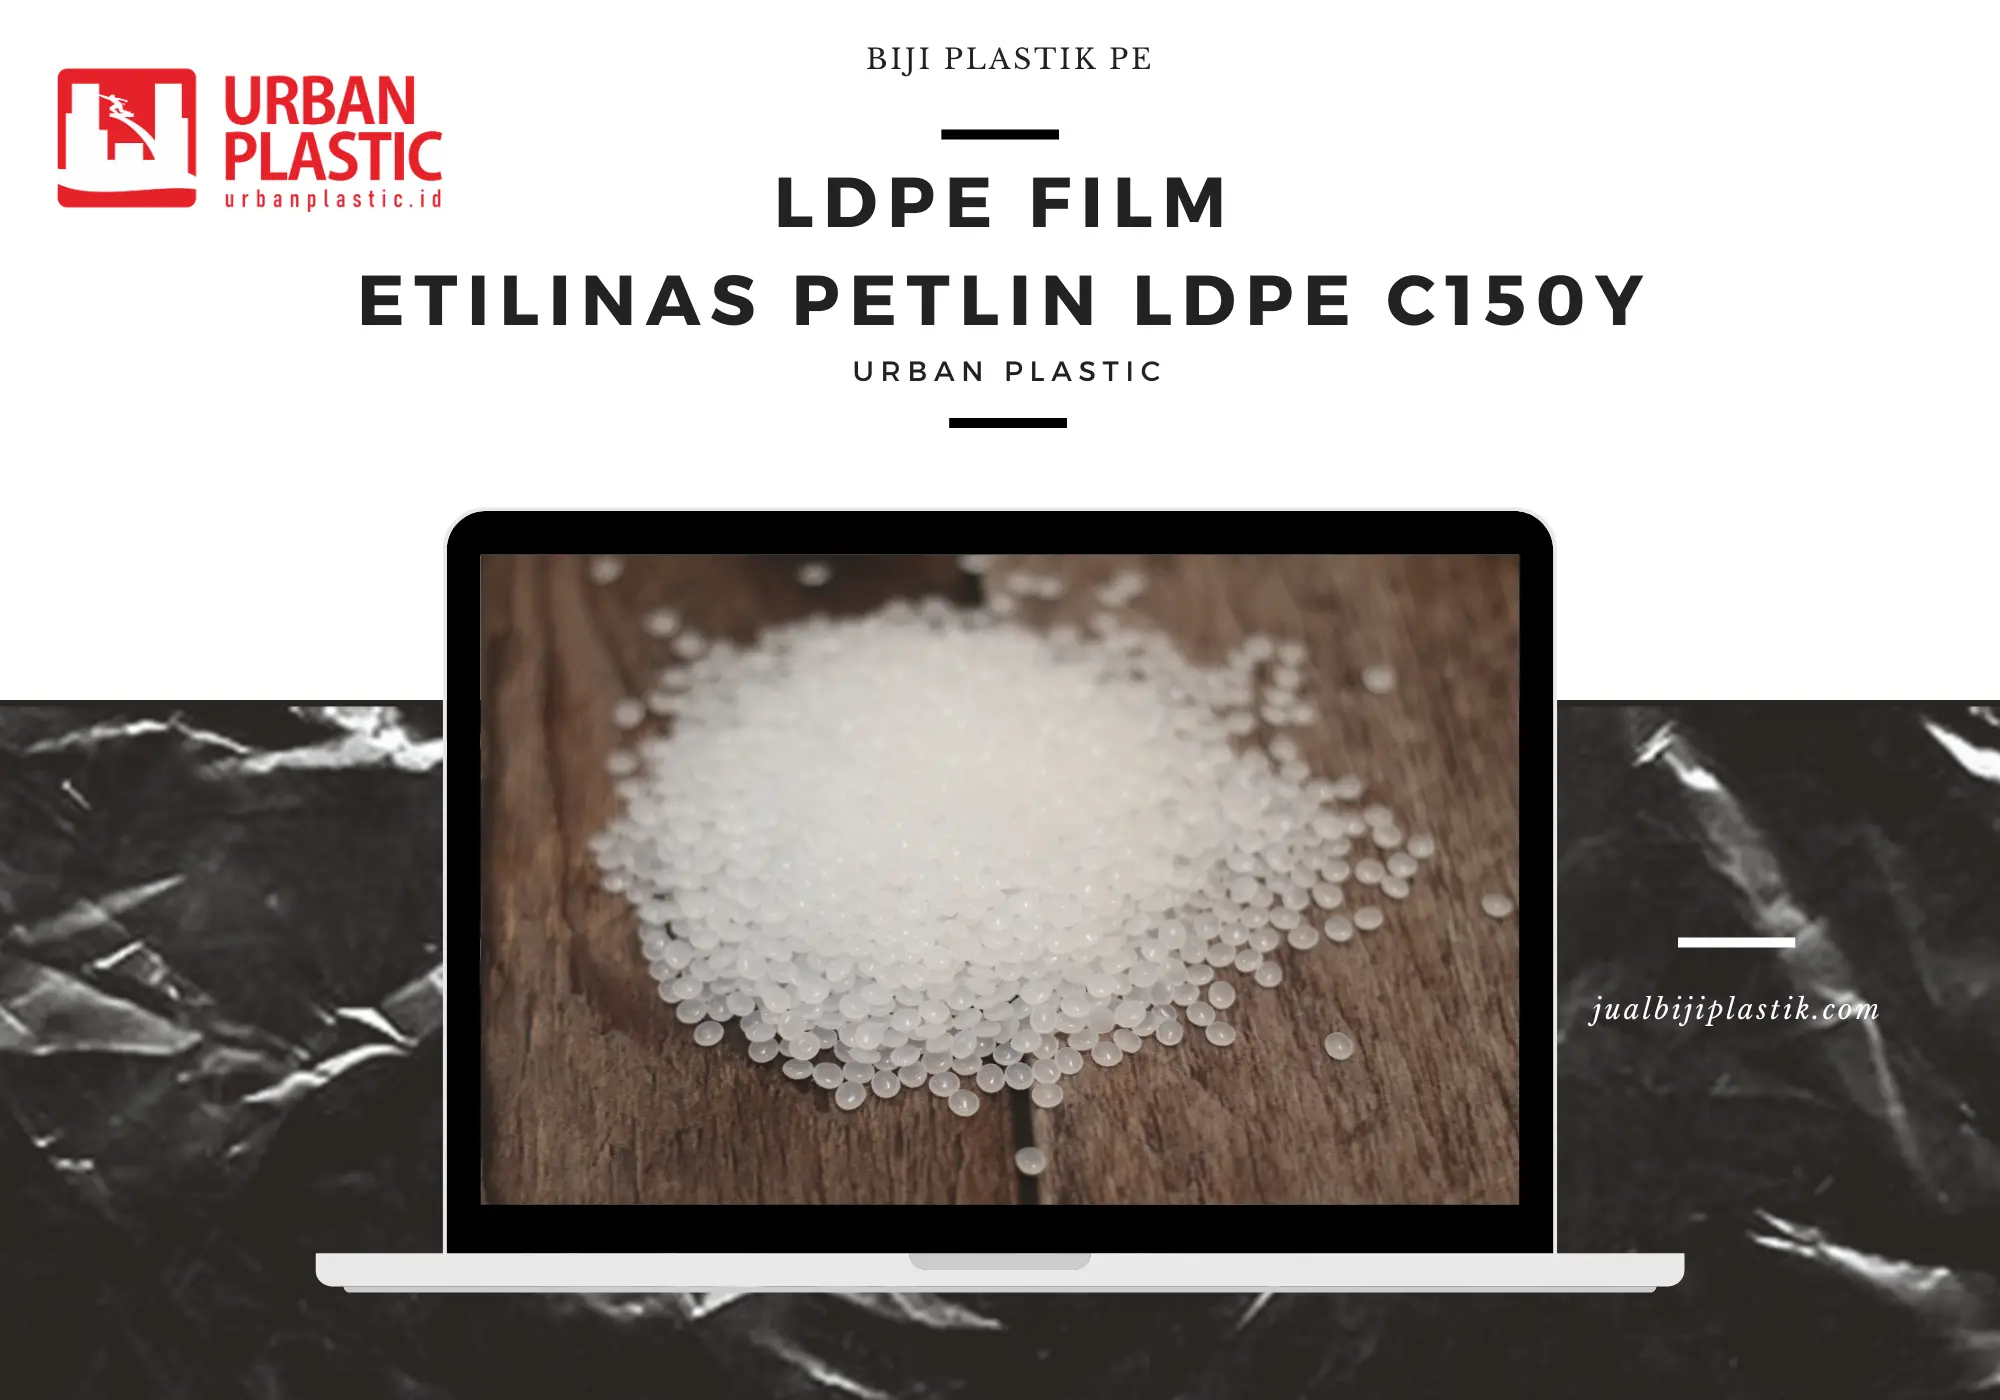 ETILINAS PETLIN LDPE C150Y